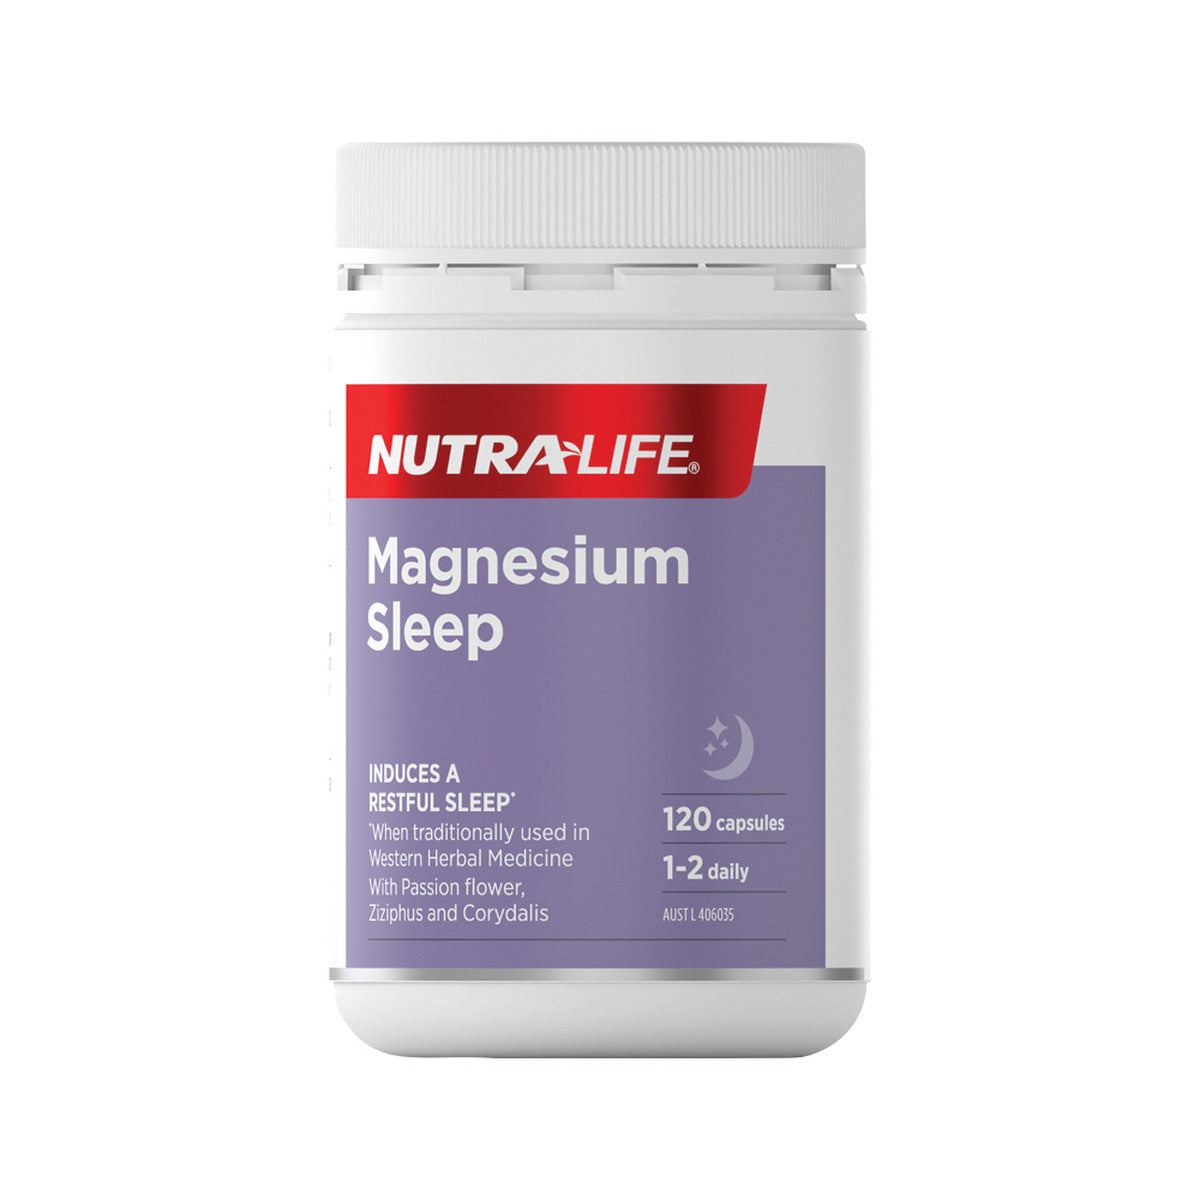 NutraLife - Magnesium Sleep